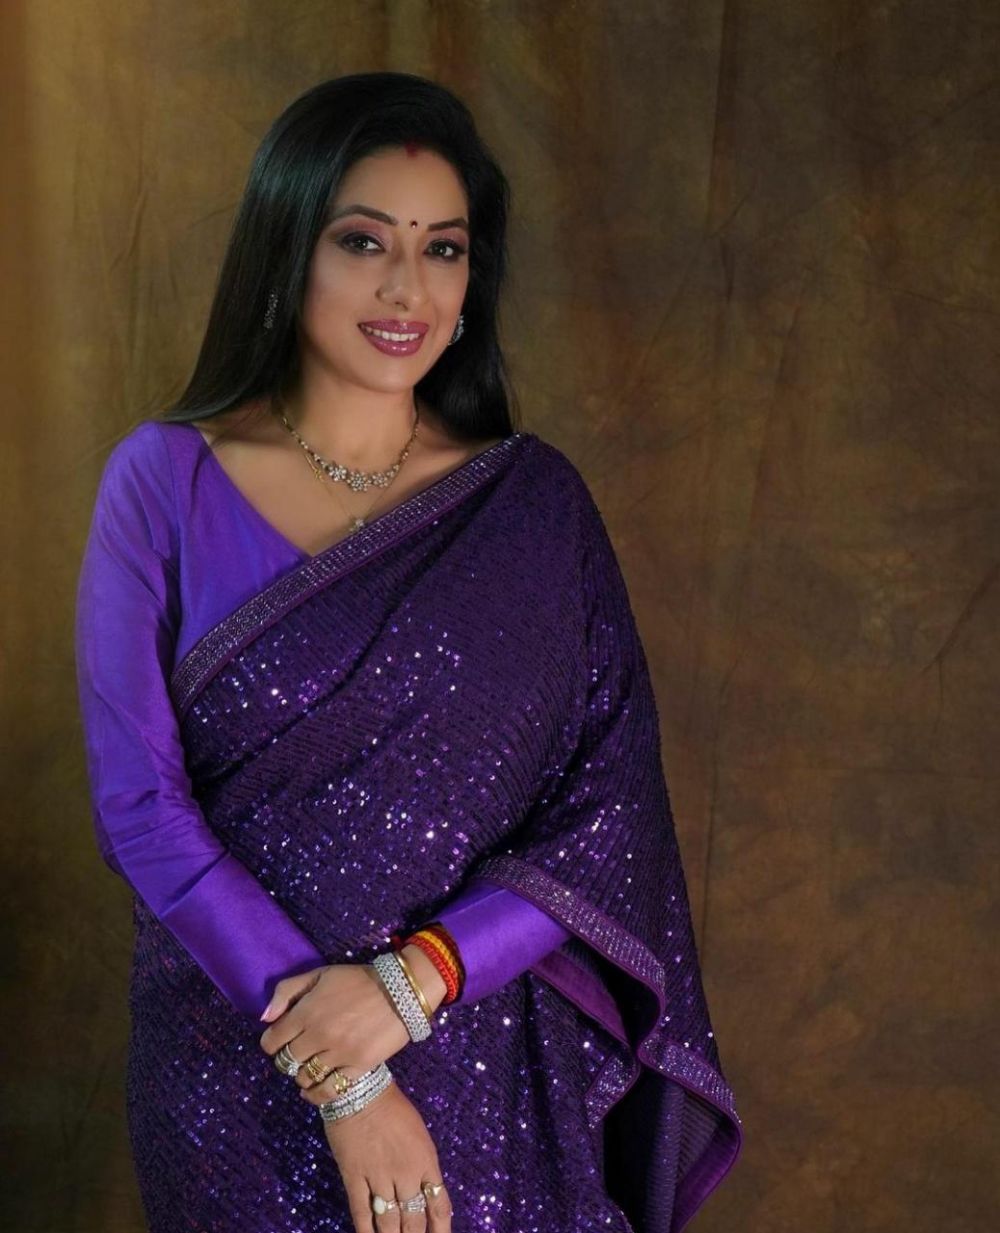 Pemeran Anupamaa kerap tampil lusuh di serial, ini 11 potretnya saat tampil glamor di pemotretan